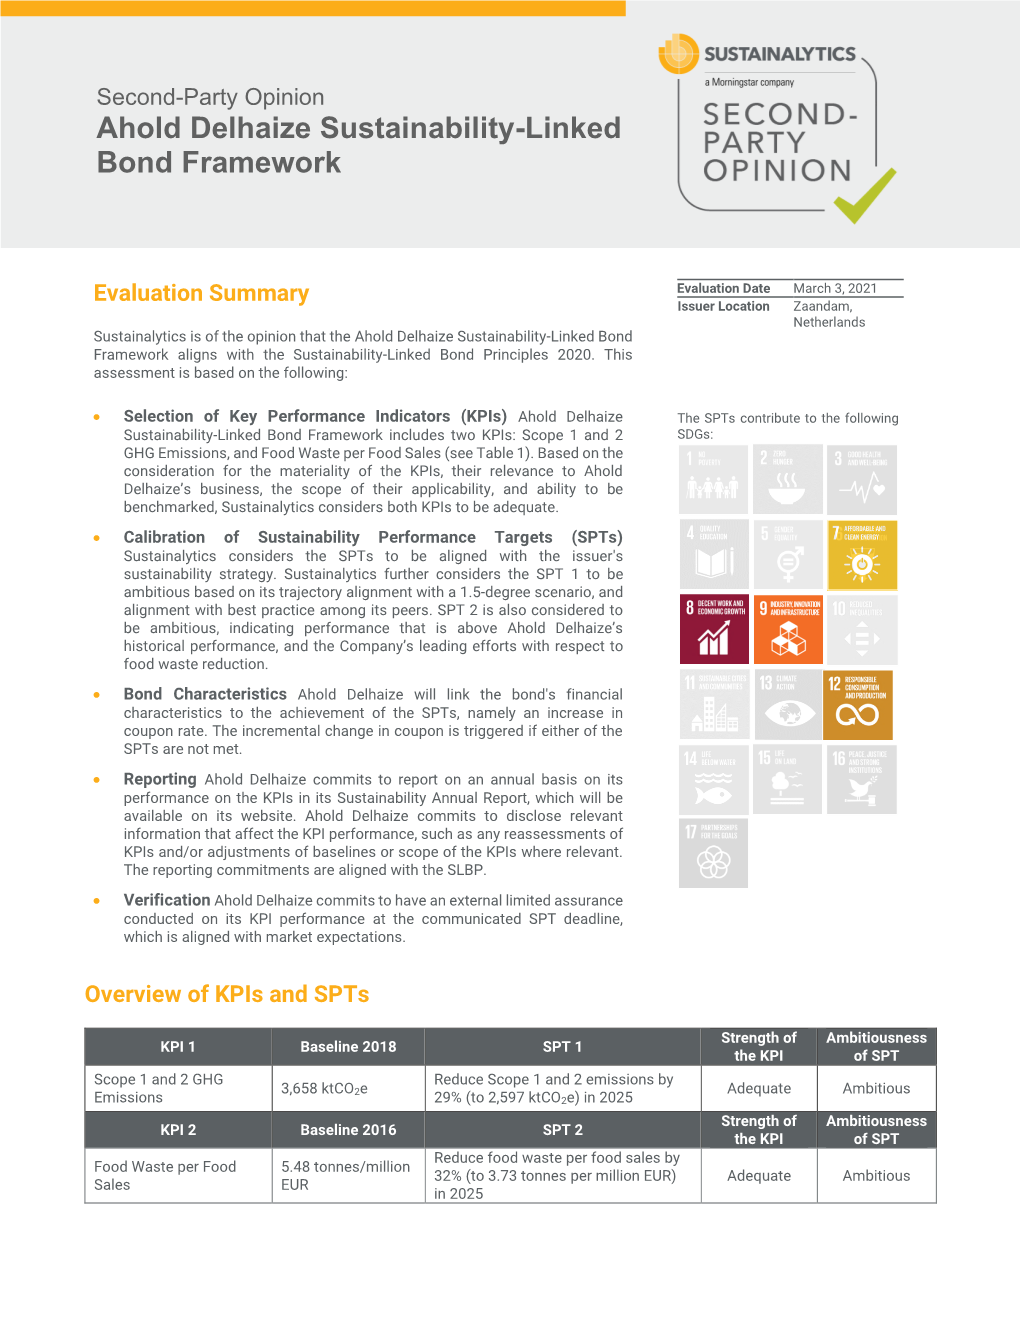 Ahold Delhaize Sustainability-Linked Bond Framework